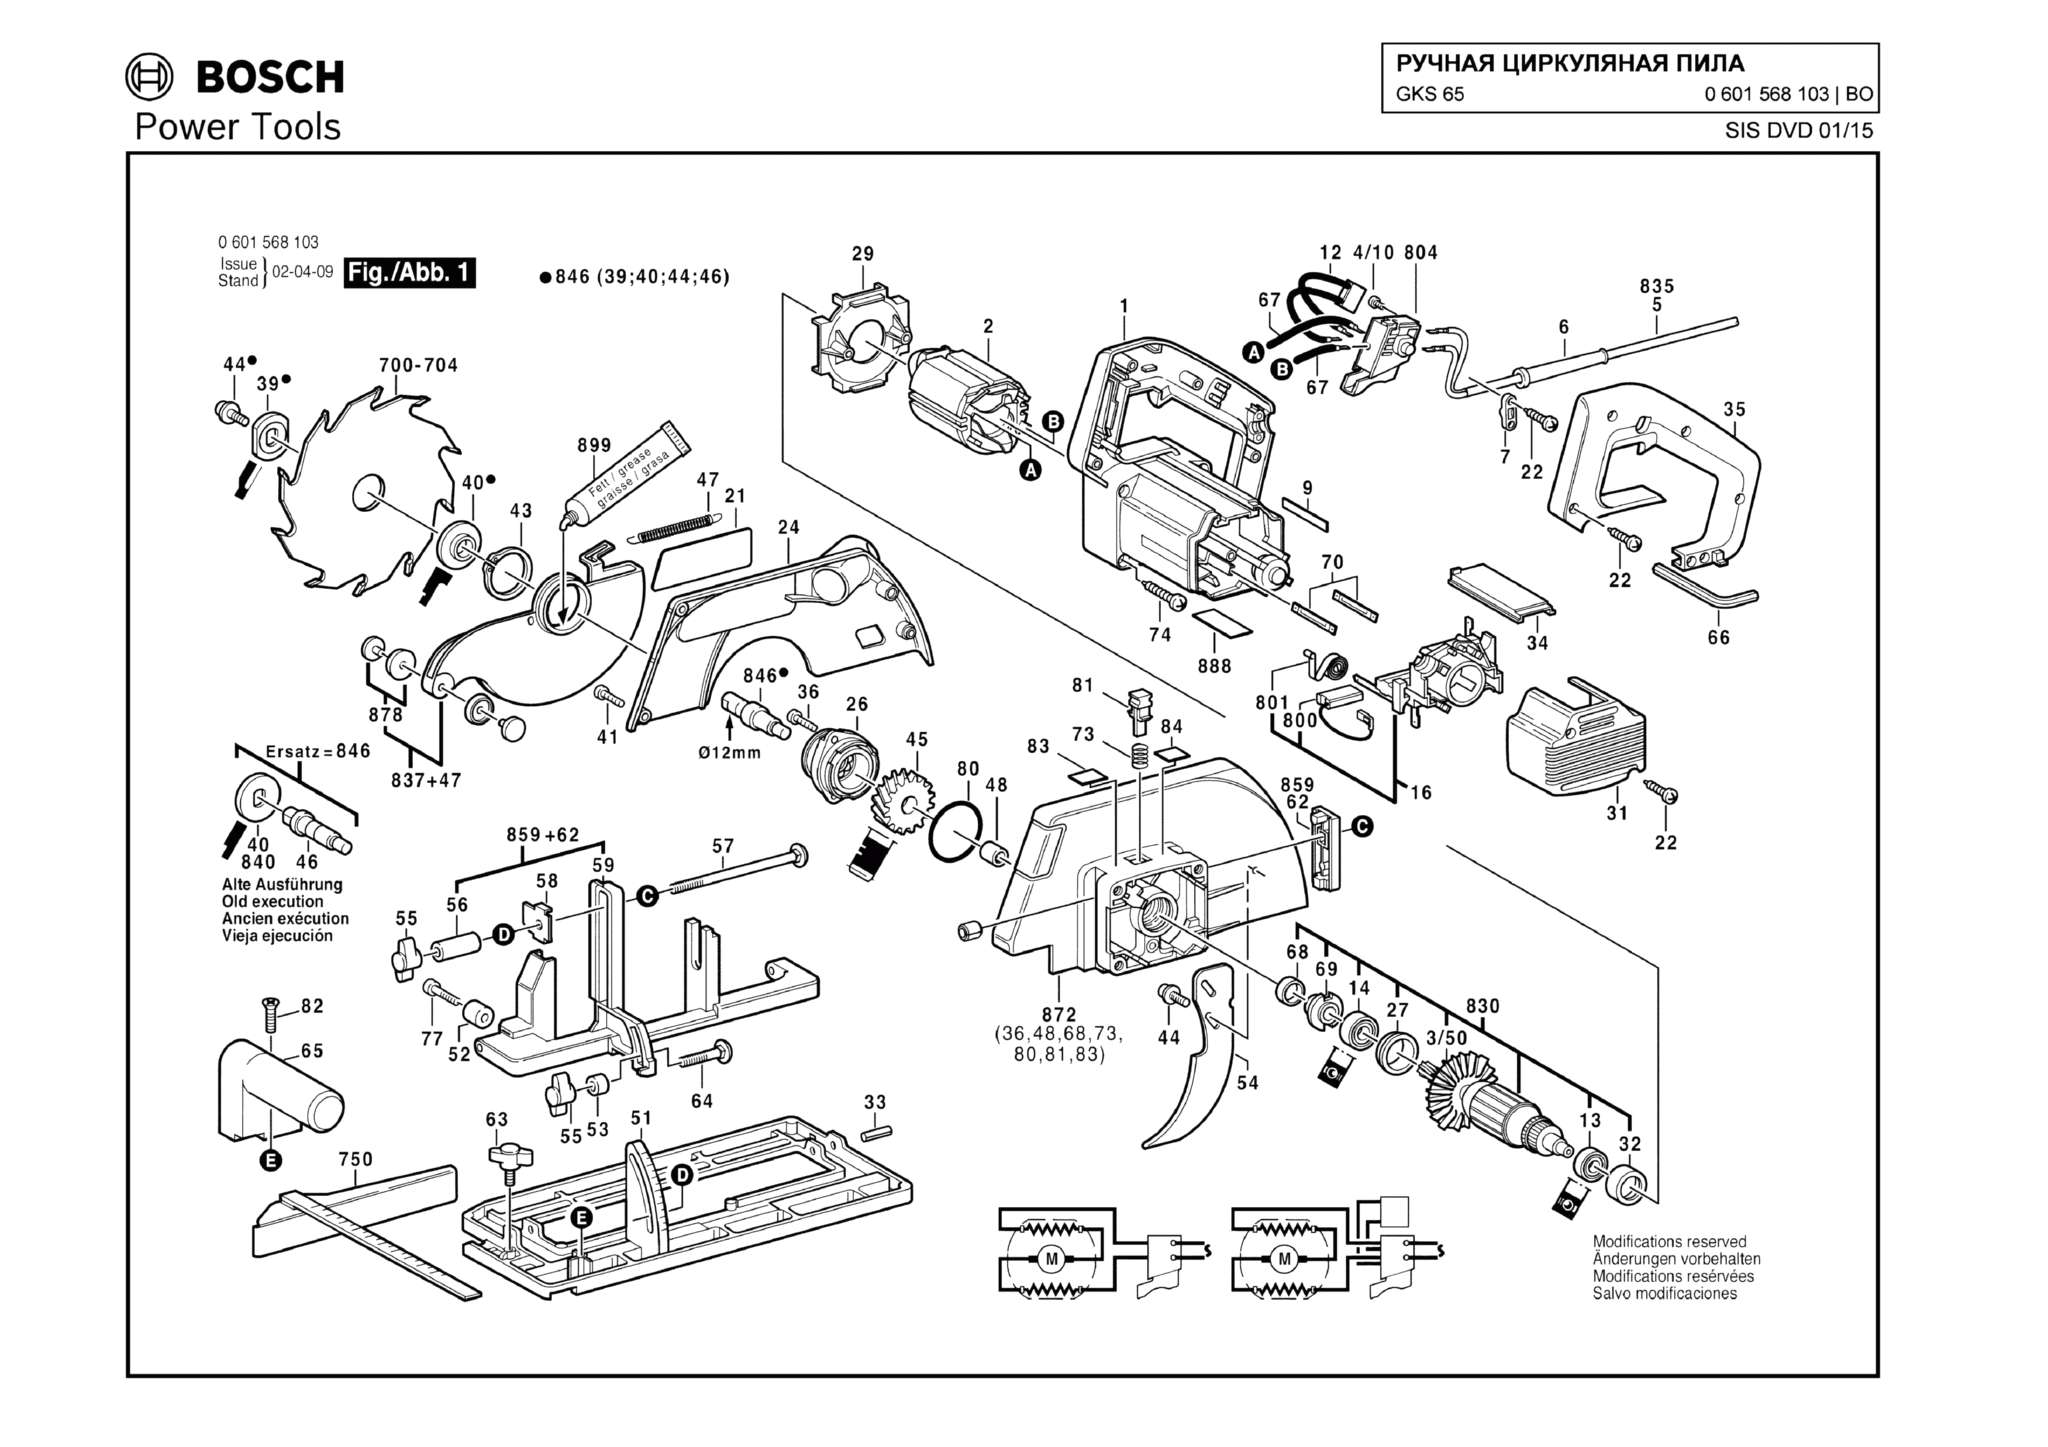 Запчасти, схема и деталировка Bosch GKS 65 (ТИП 0601568103)